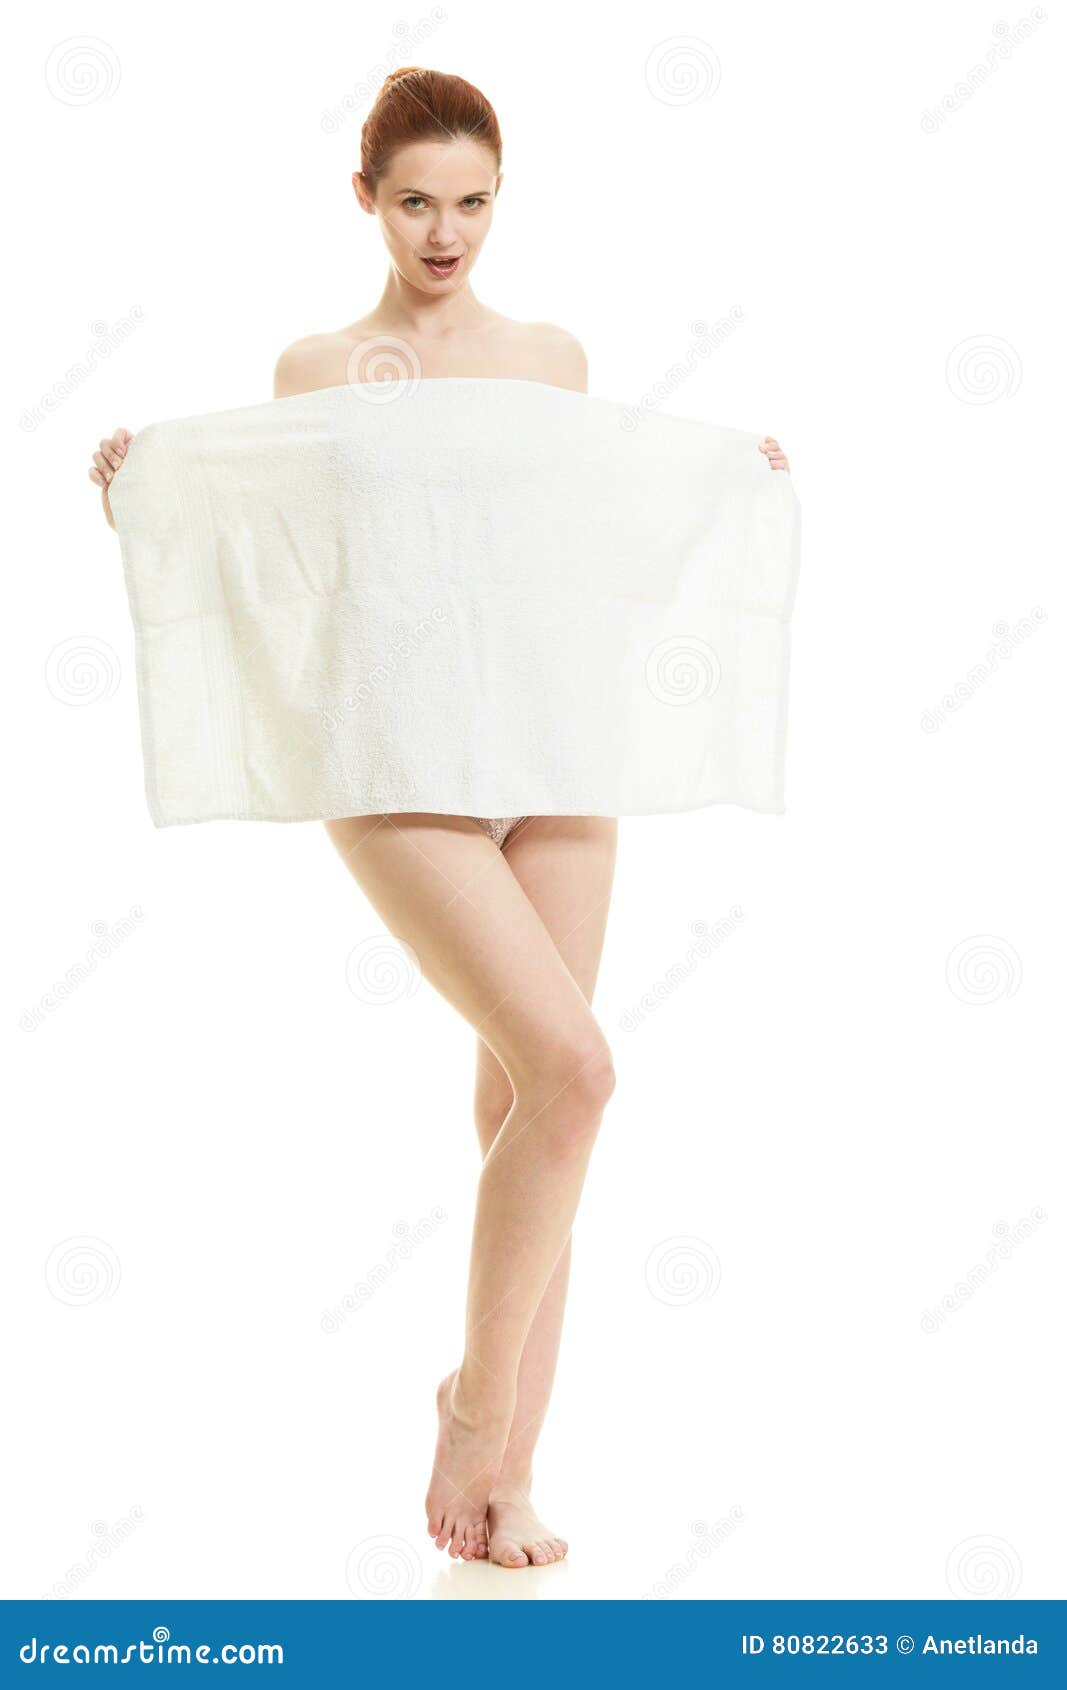 Прикрылась полотенцем. Девушка прикрывается. Женщина прикрывается полотенцем.